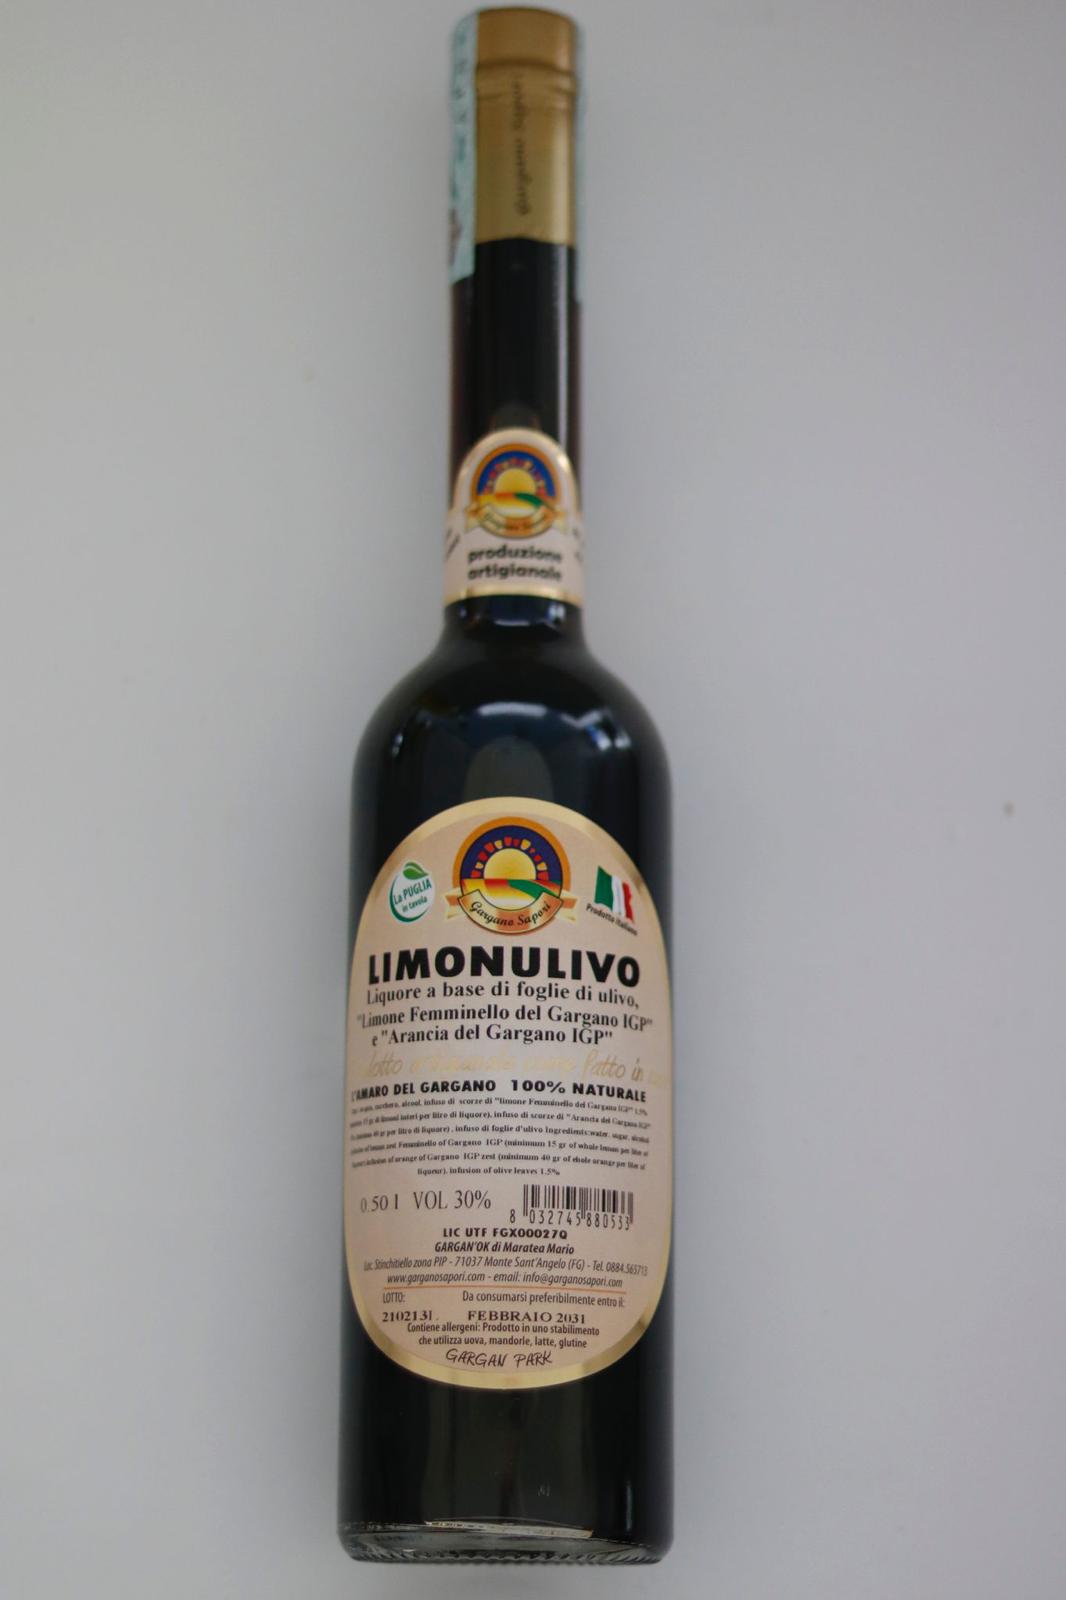 LIQUORE LIMONULIVO DEL GARGANO 500 ML - 2 Bottiglie - I migliori prodotti Made in Italy da Fiera di Monza Shop - Solo 27.90€! Acquista subito su Fiera di Monza Shop!